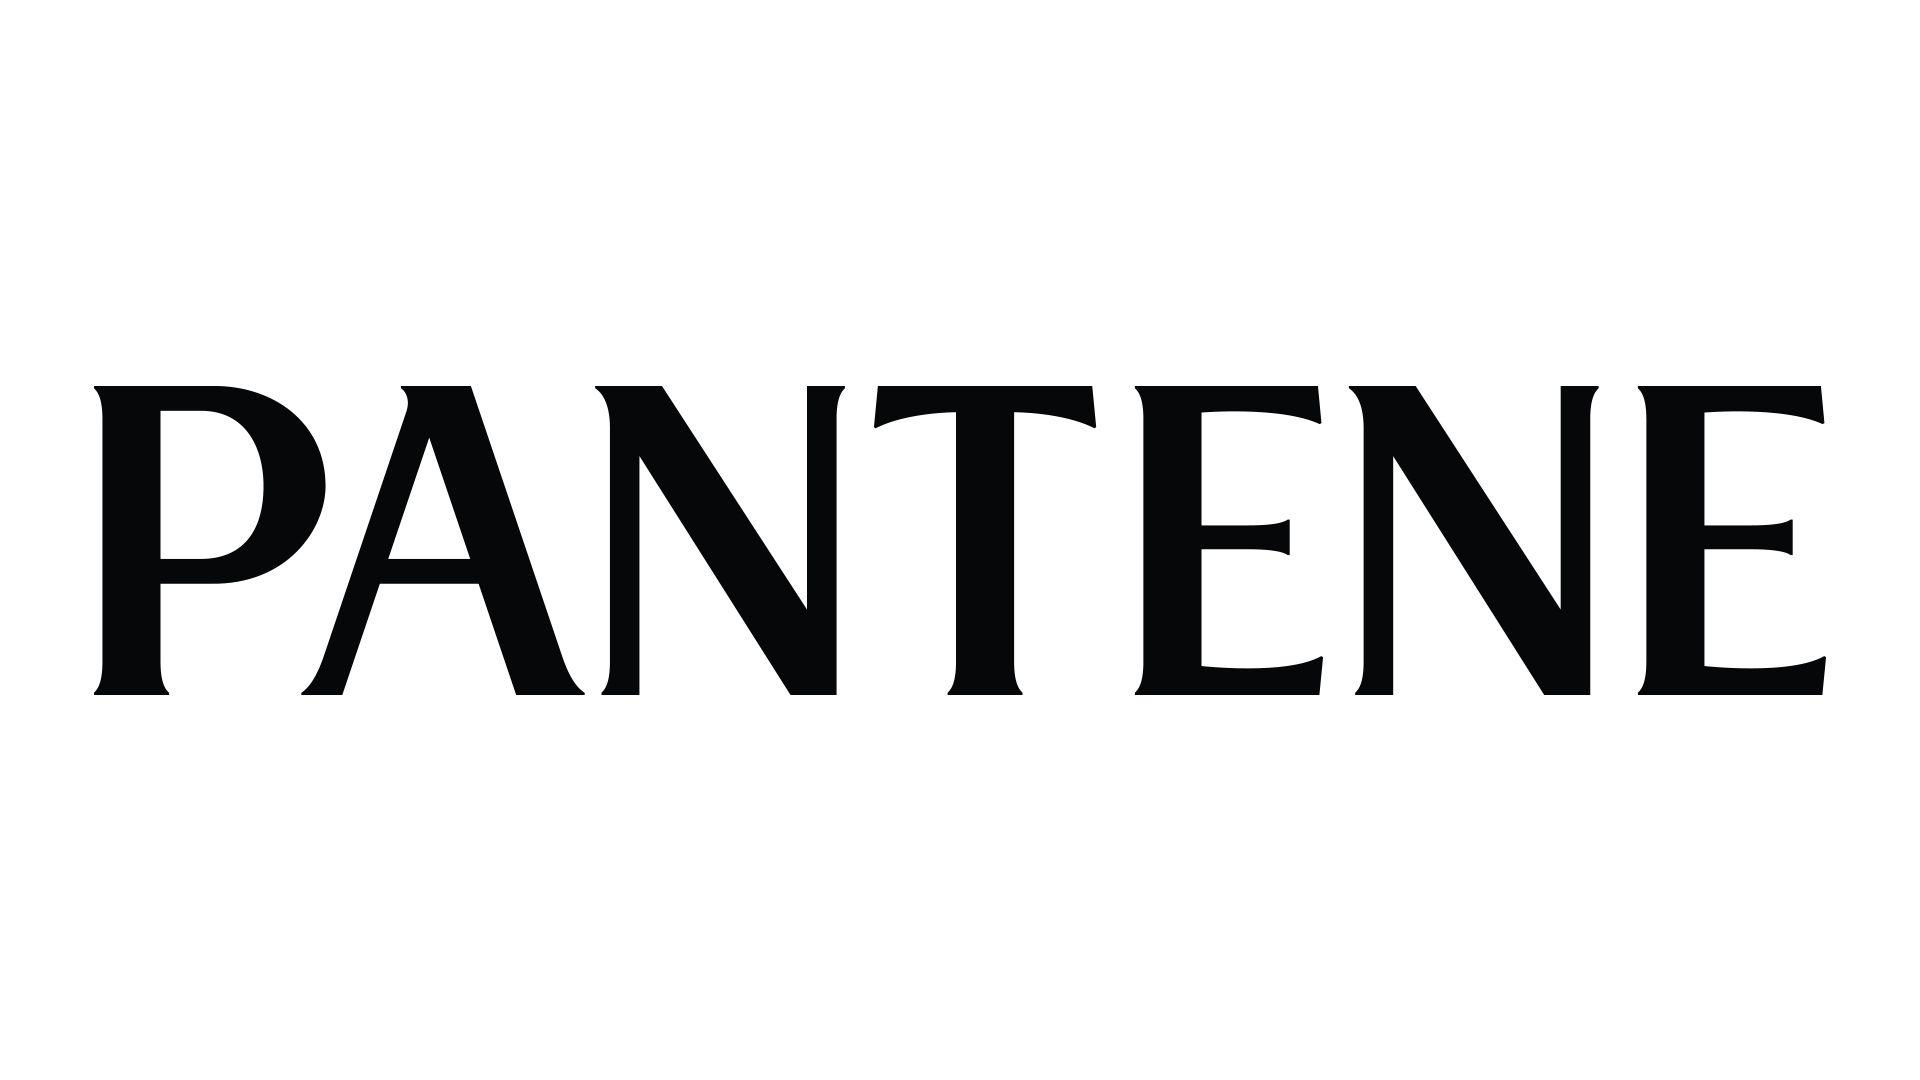 Pantene Logo - Pantene Introduces Priyanka Chopra as Newest Global Ambassador. P&G